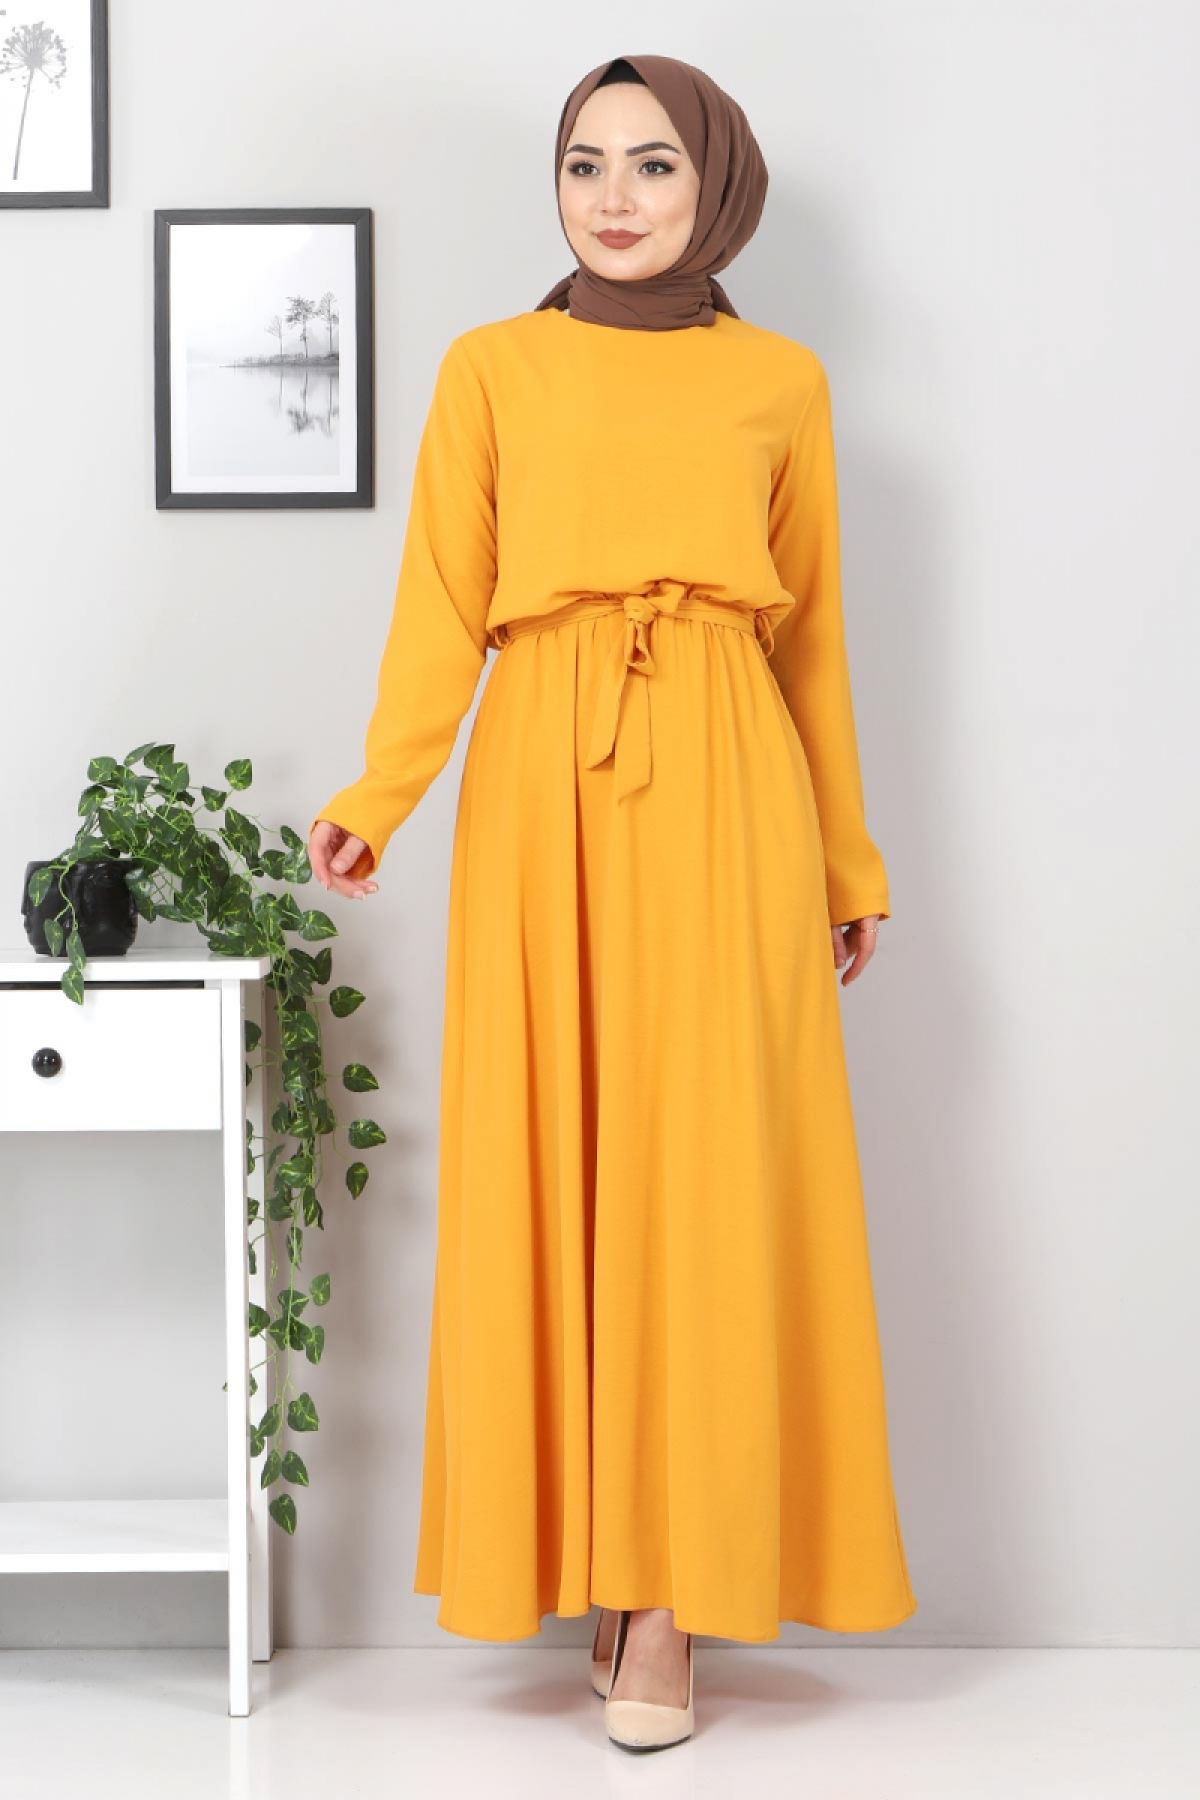 Tesettür Dünyası - فستان بخصر مطاطي TSD5522 لون أصفر داكن